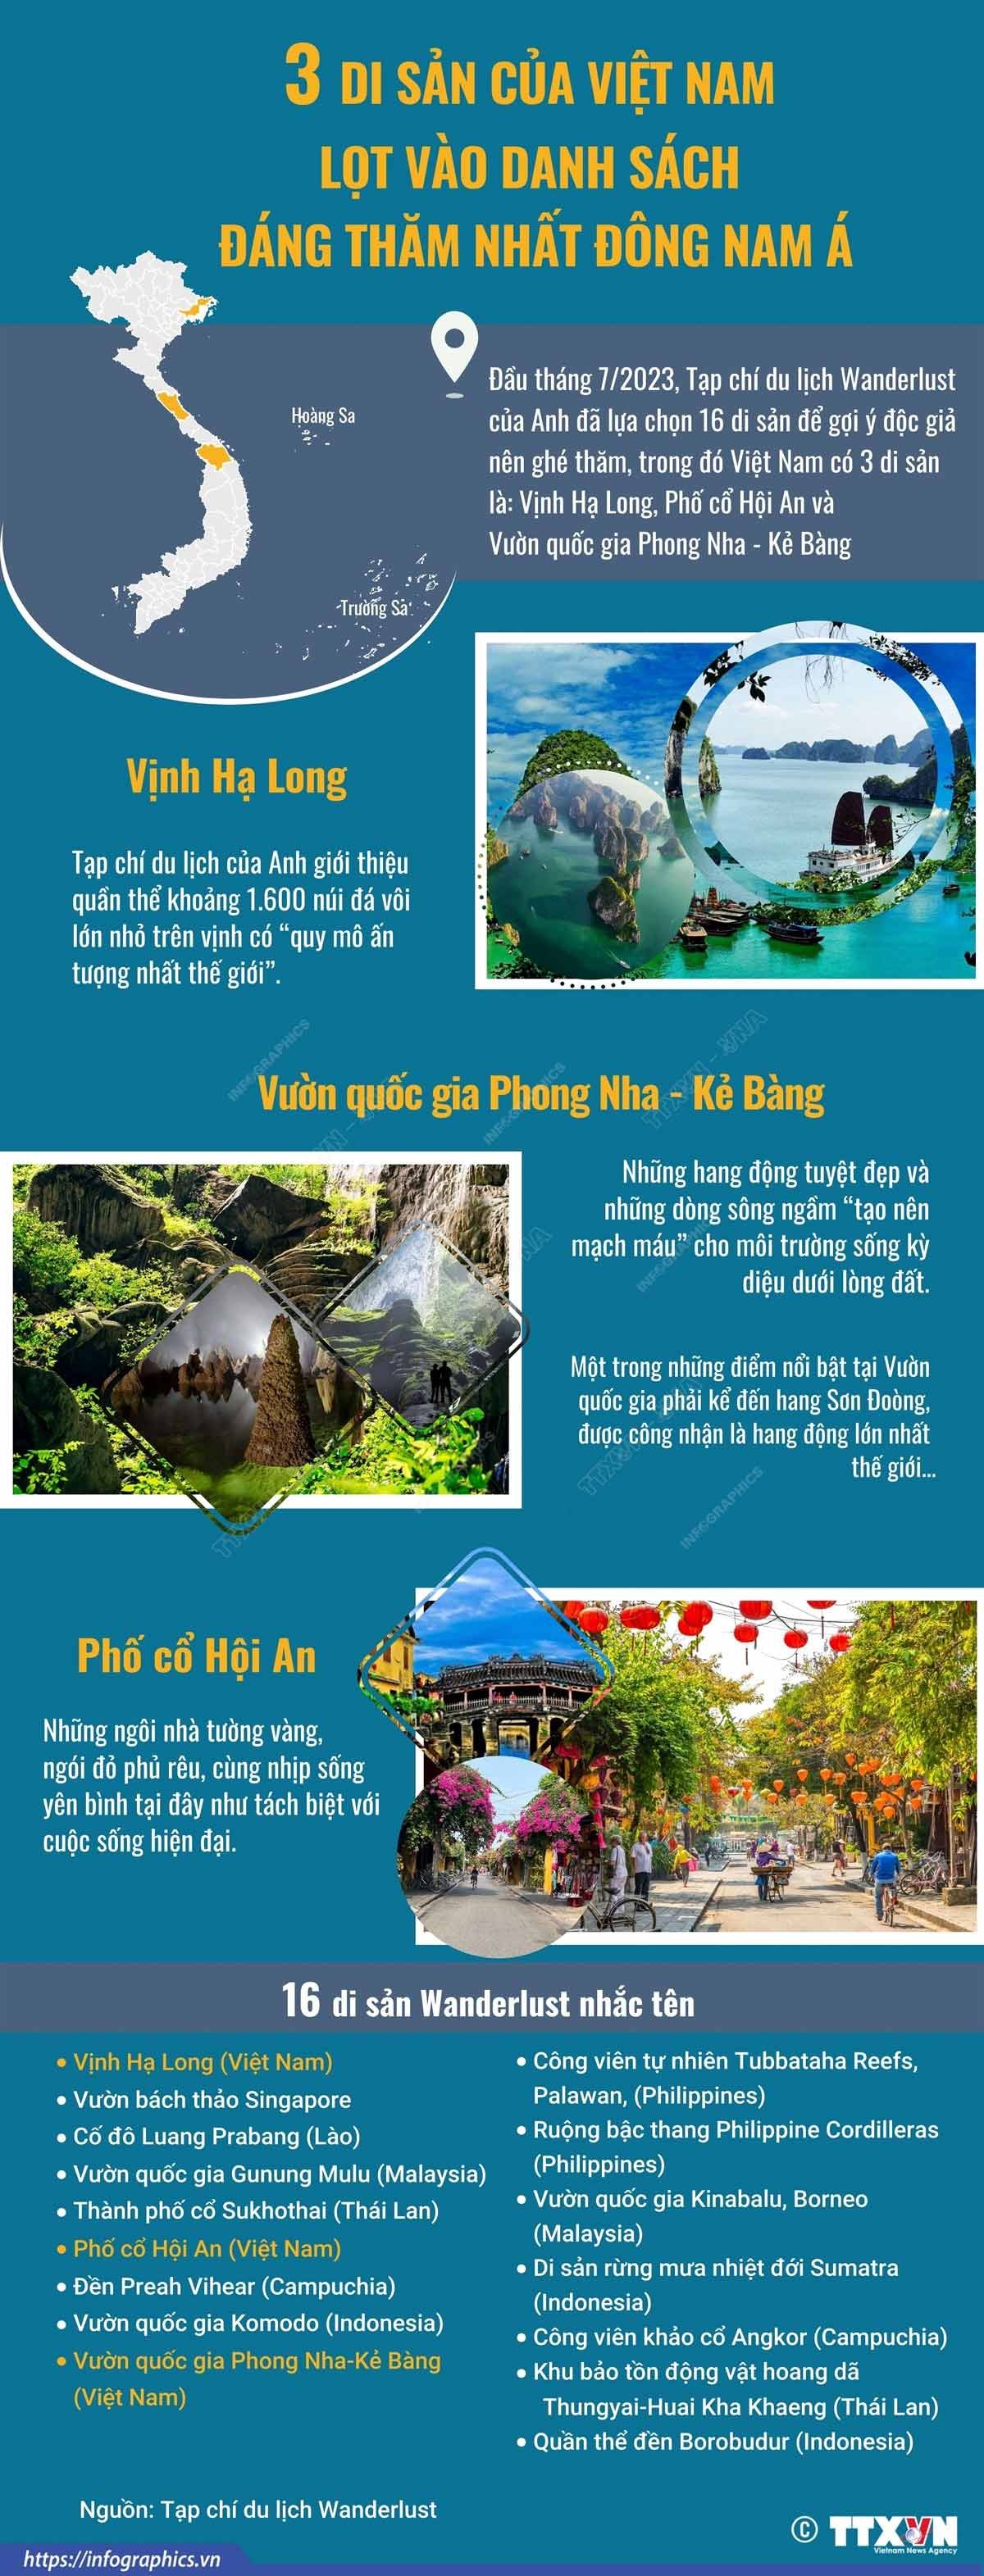 Tạp chí du lịch Anh chọn 3 di sản Việt Nam vào danh sách đáng thăm nhất Đông Nam Á